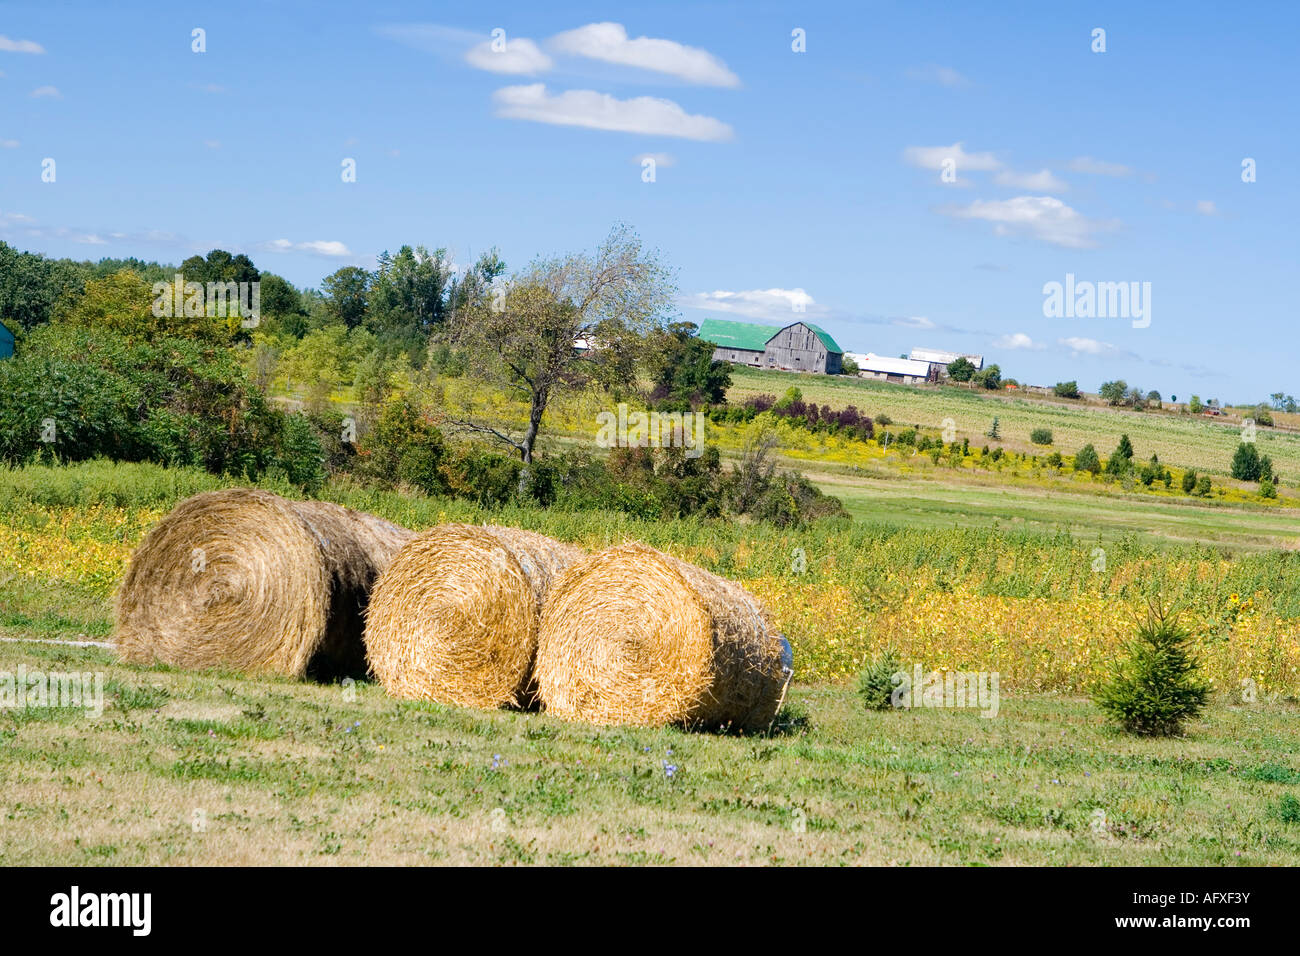 farm view, canada Stock Photo